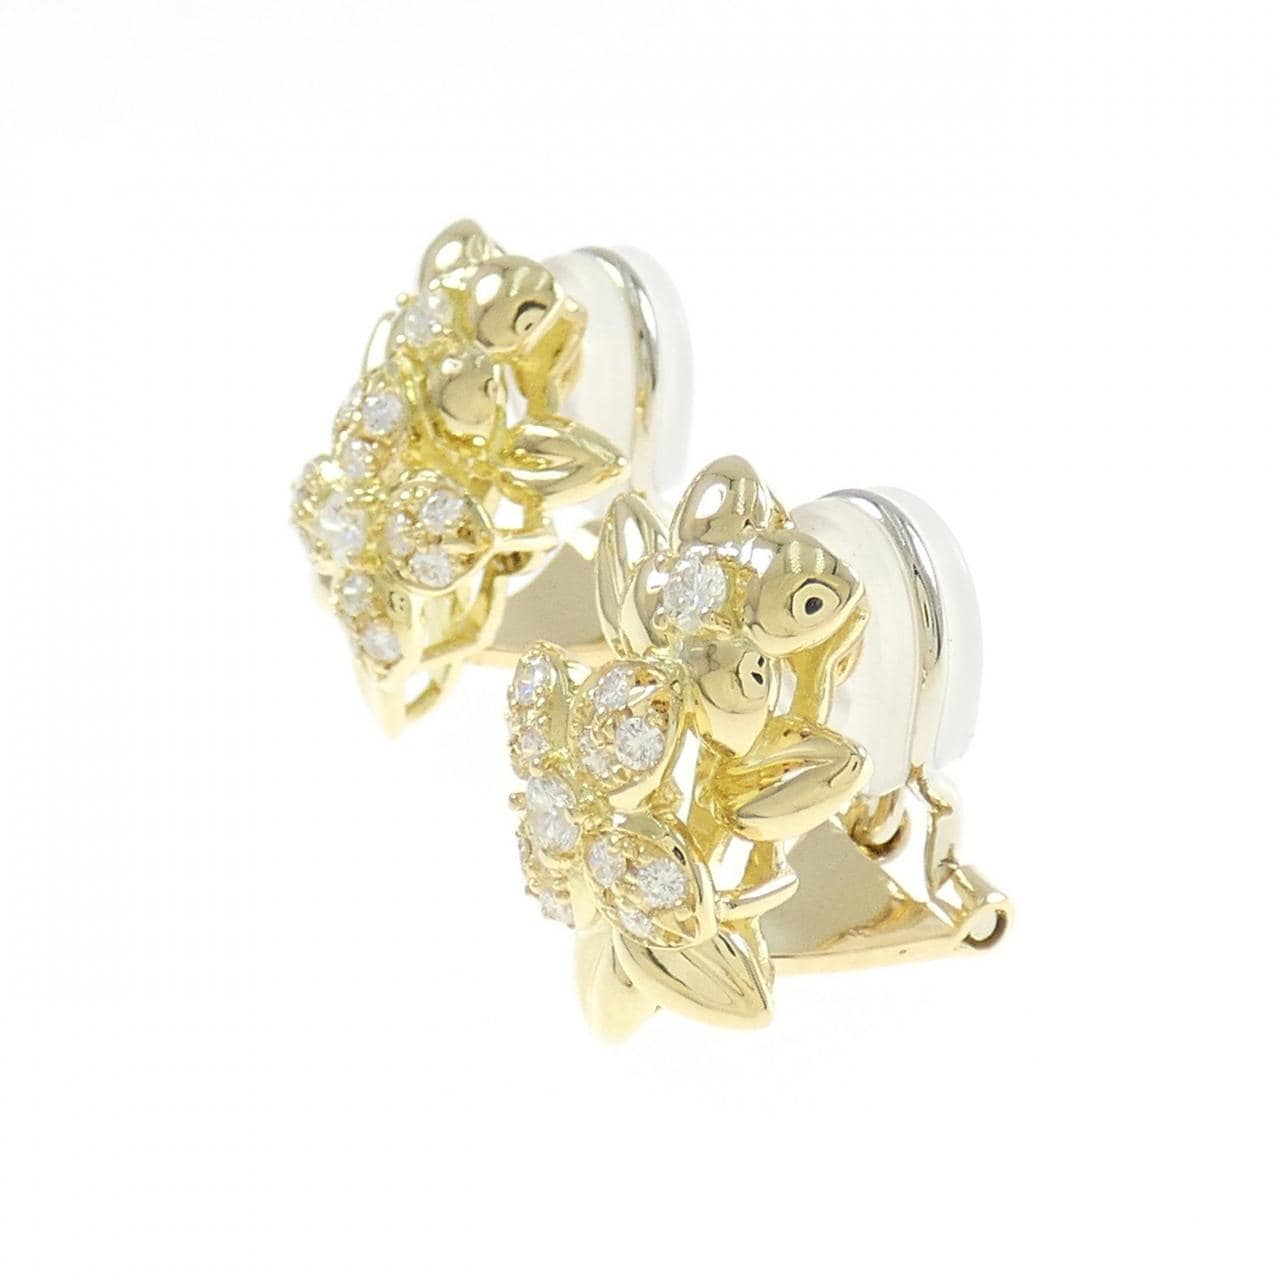 Queen Diamond earrings